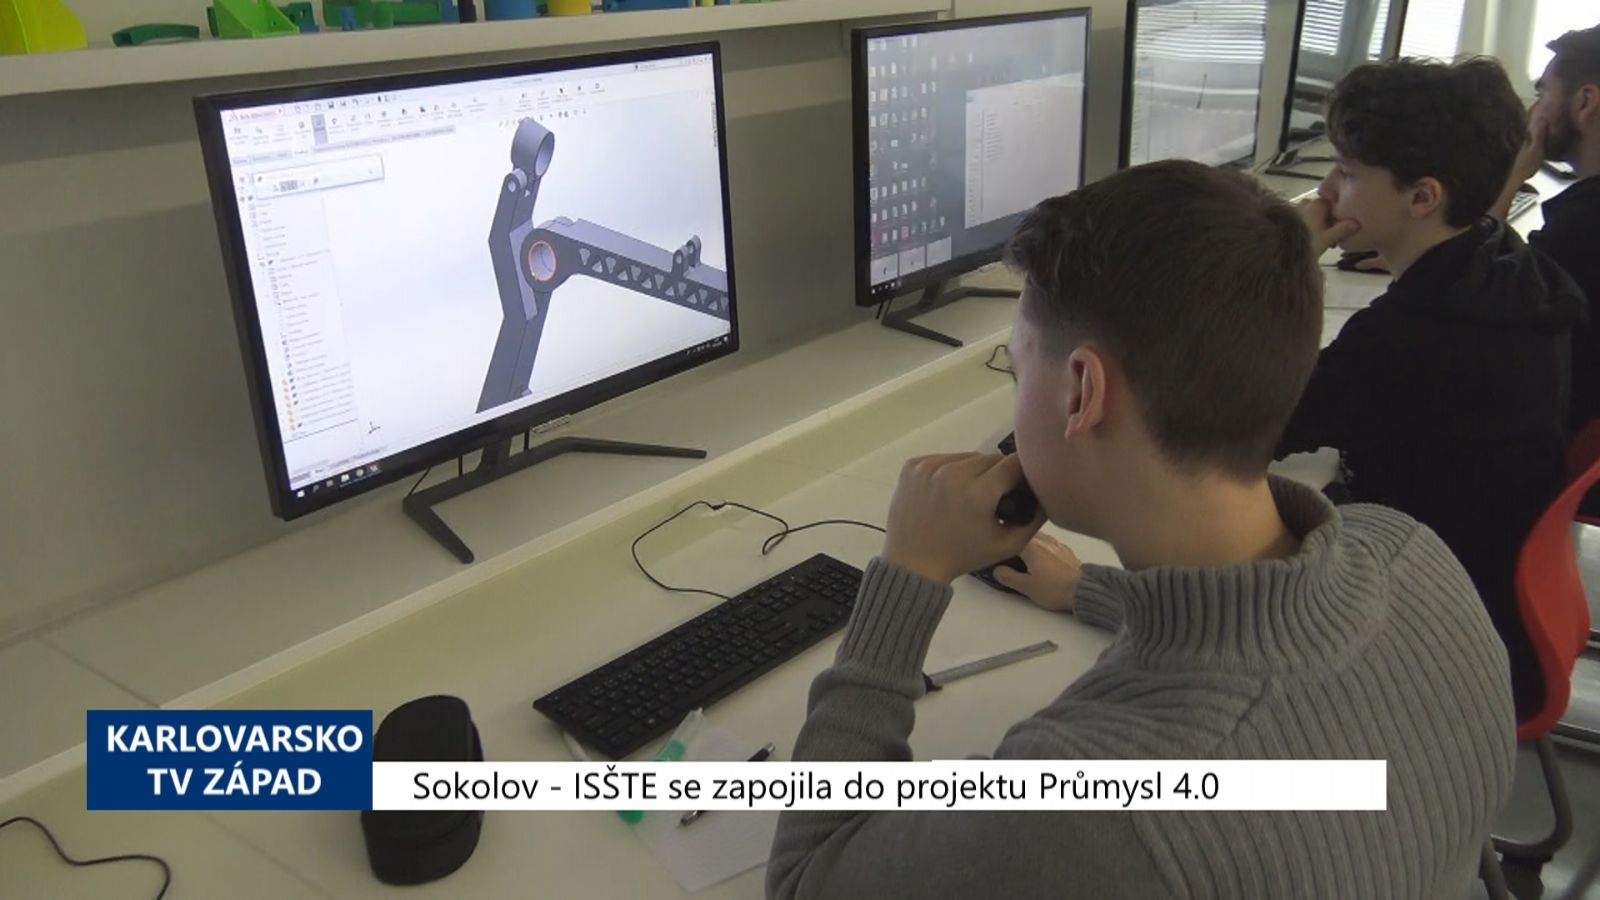 Sokolov: ISŠTE se zapojila do projektu Průmysl 4.0 (TV Západ)